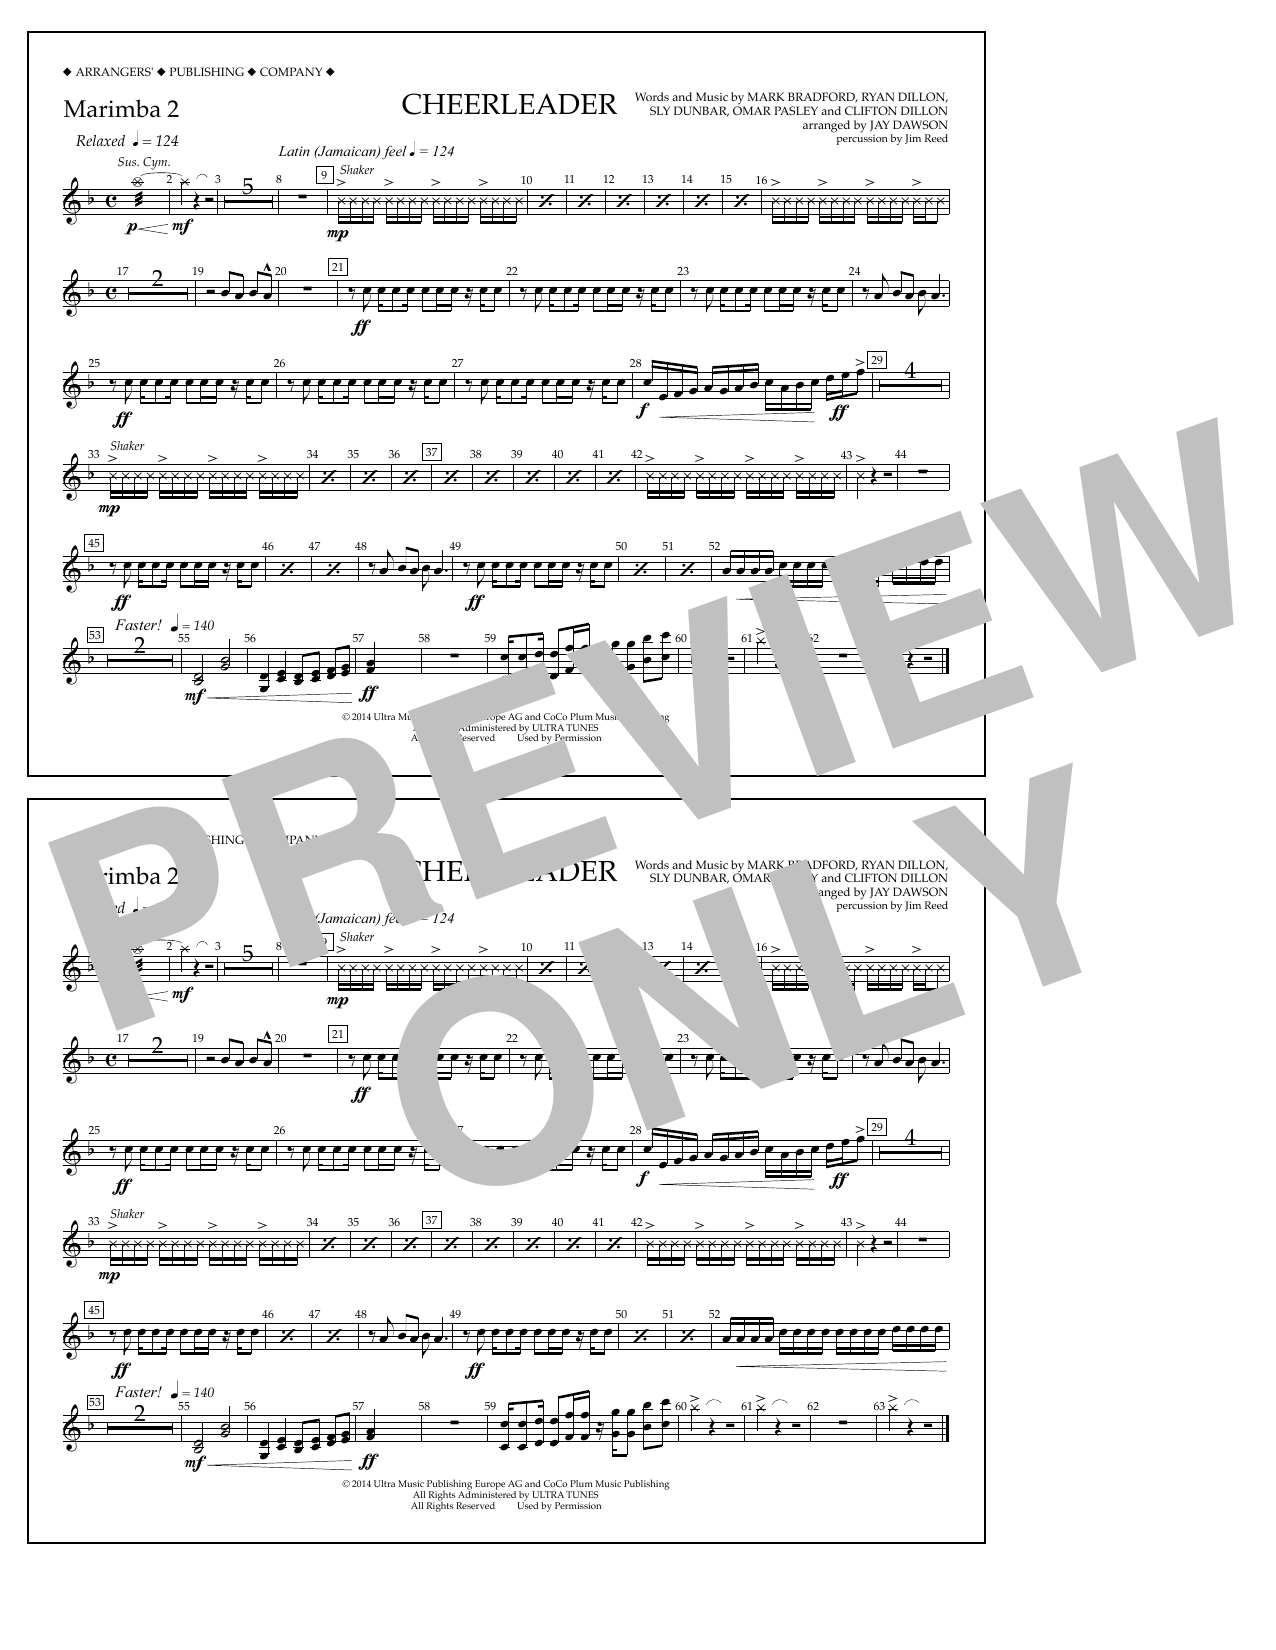 Jay Dawson Cheerleader - Marimba 2 Sheet Music Notes & Chords for Marching Band - Download or Print PDF